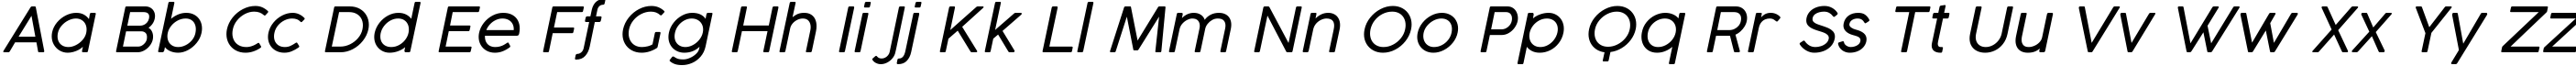 Пример написания английского алфавита шрифтом Cocogoose Pro Light Italic